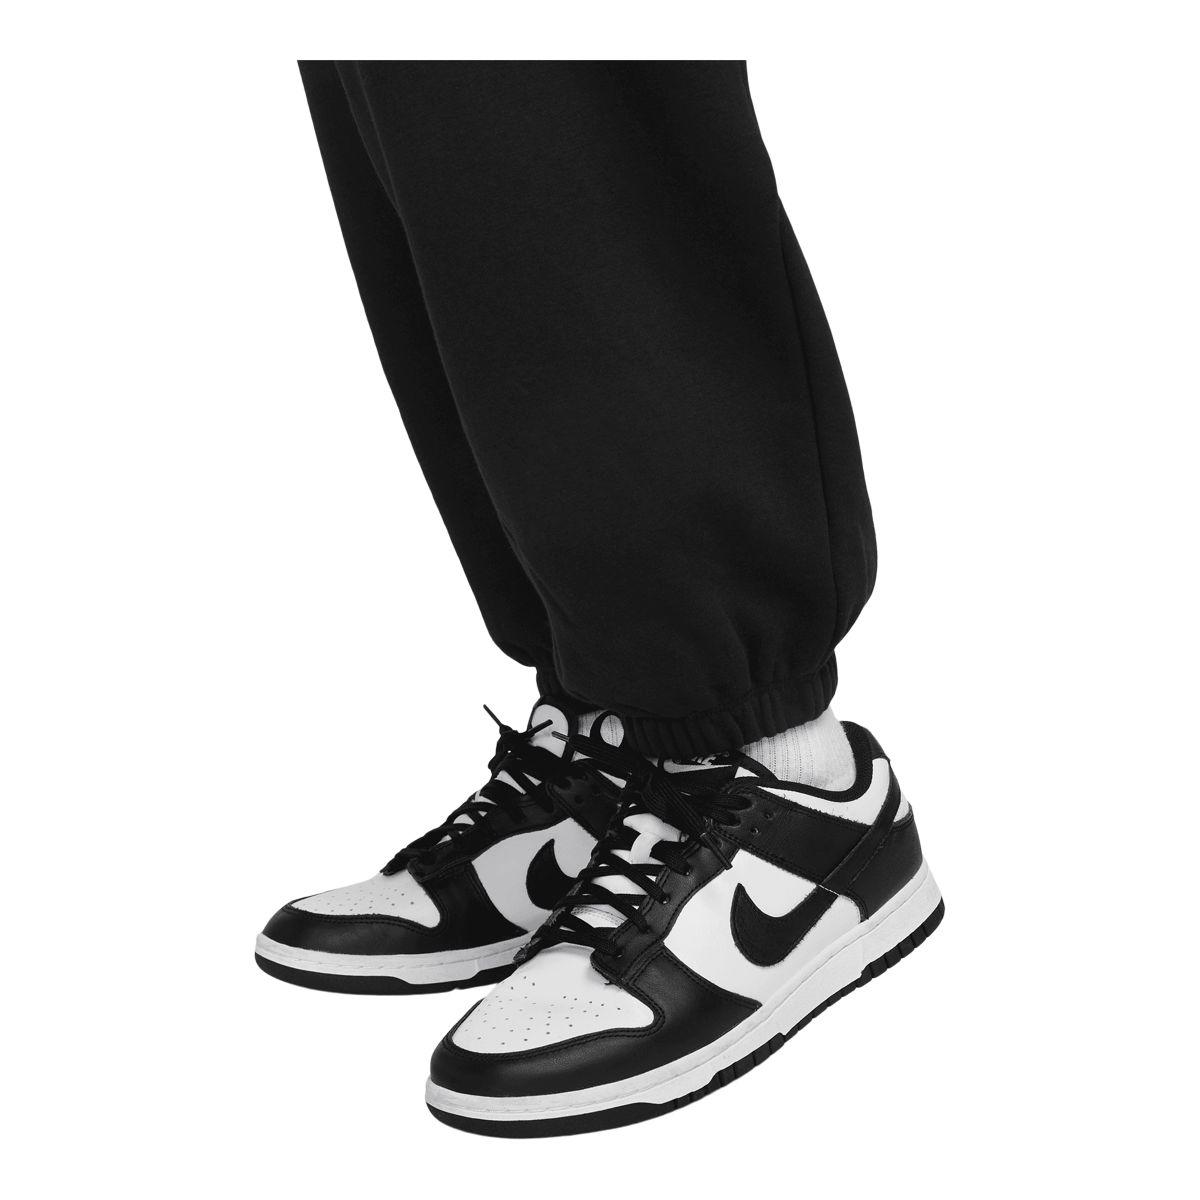 Buy Nike Women's Sportswear Club Fleece Mid-Rise Wide Pants Grey